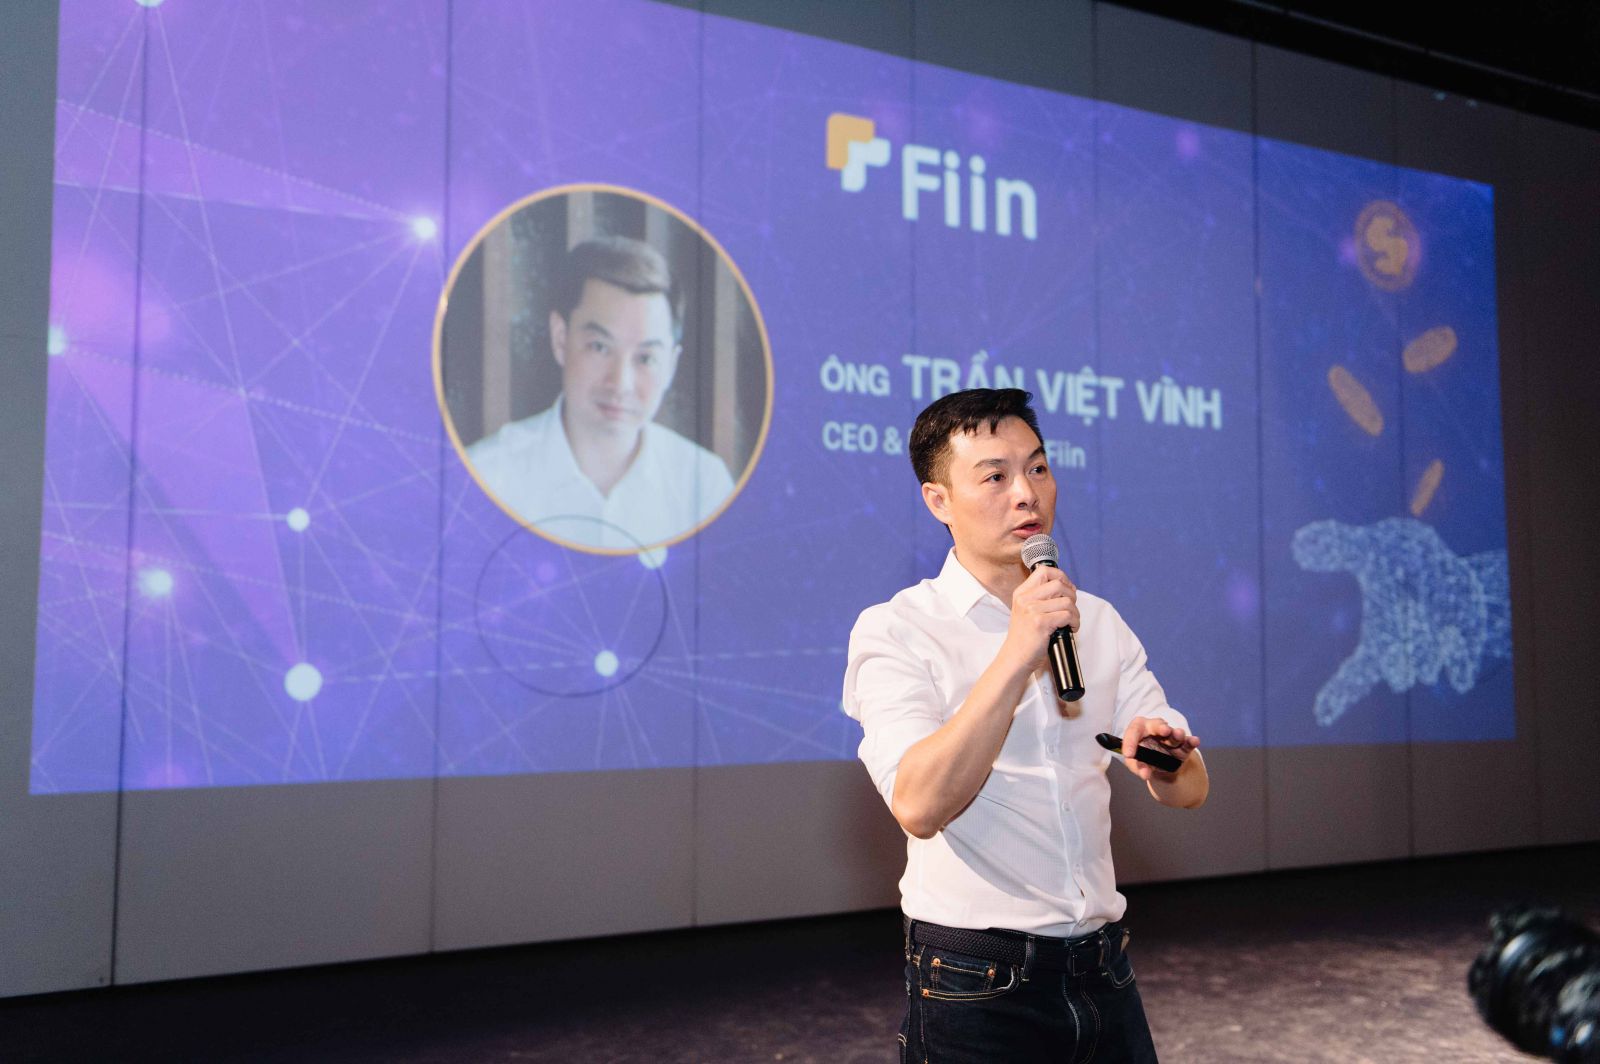 Ông Trần Việt Vĩnh - Nhà sáng lập kiêm Giám đốc điều hành công ty Cổ phần Đổi mới Công nghệ Tài chính Fiin chia sẻ về dịch vụ tín dụng tiêu dùng